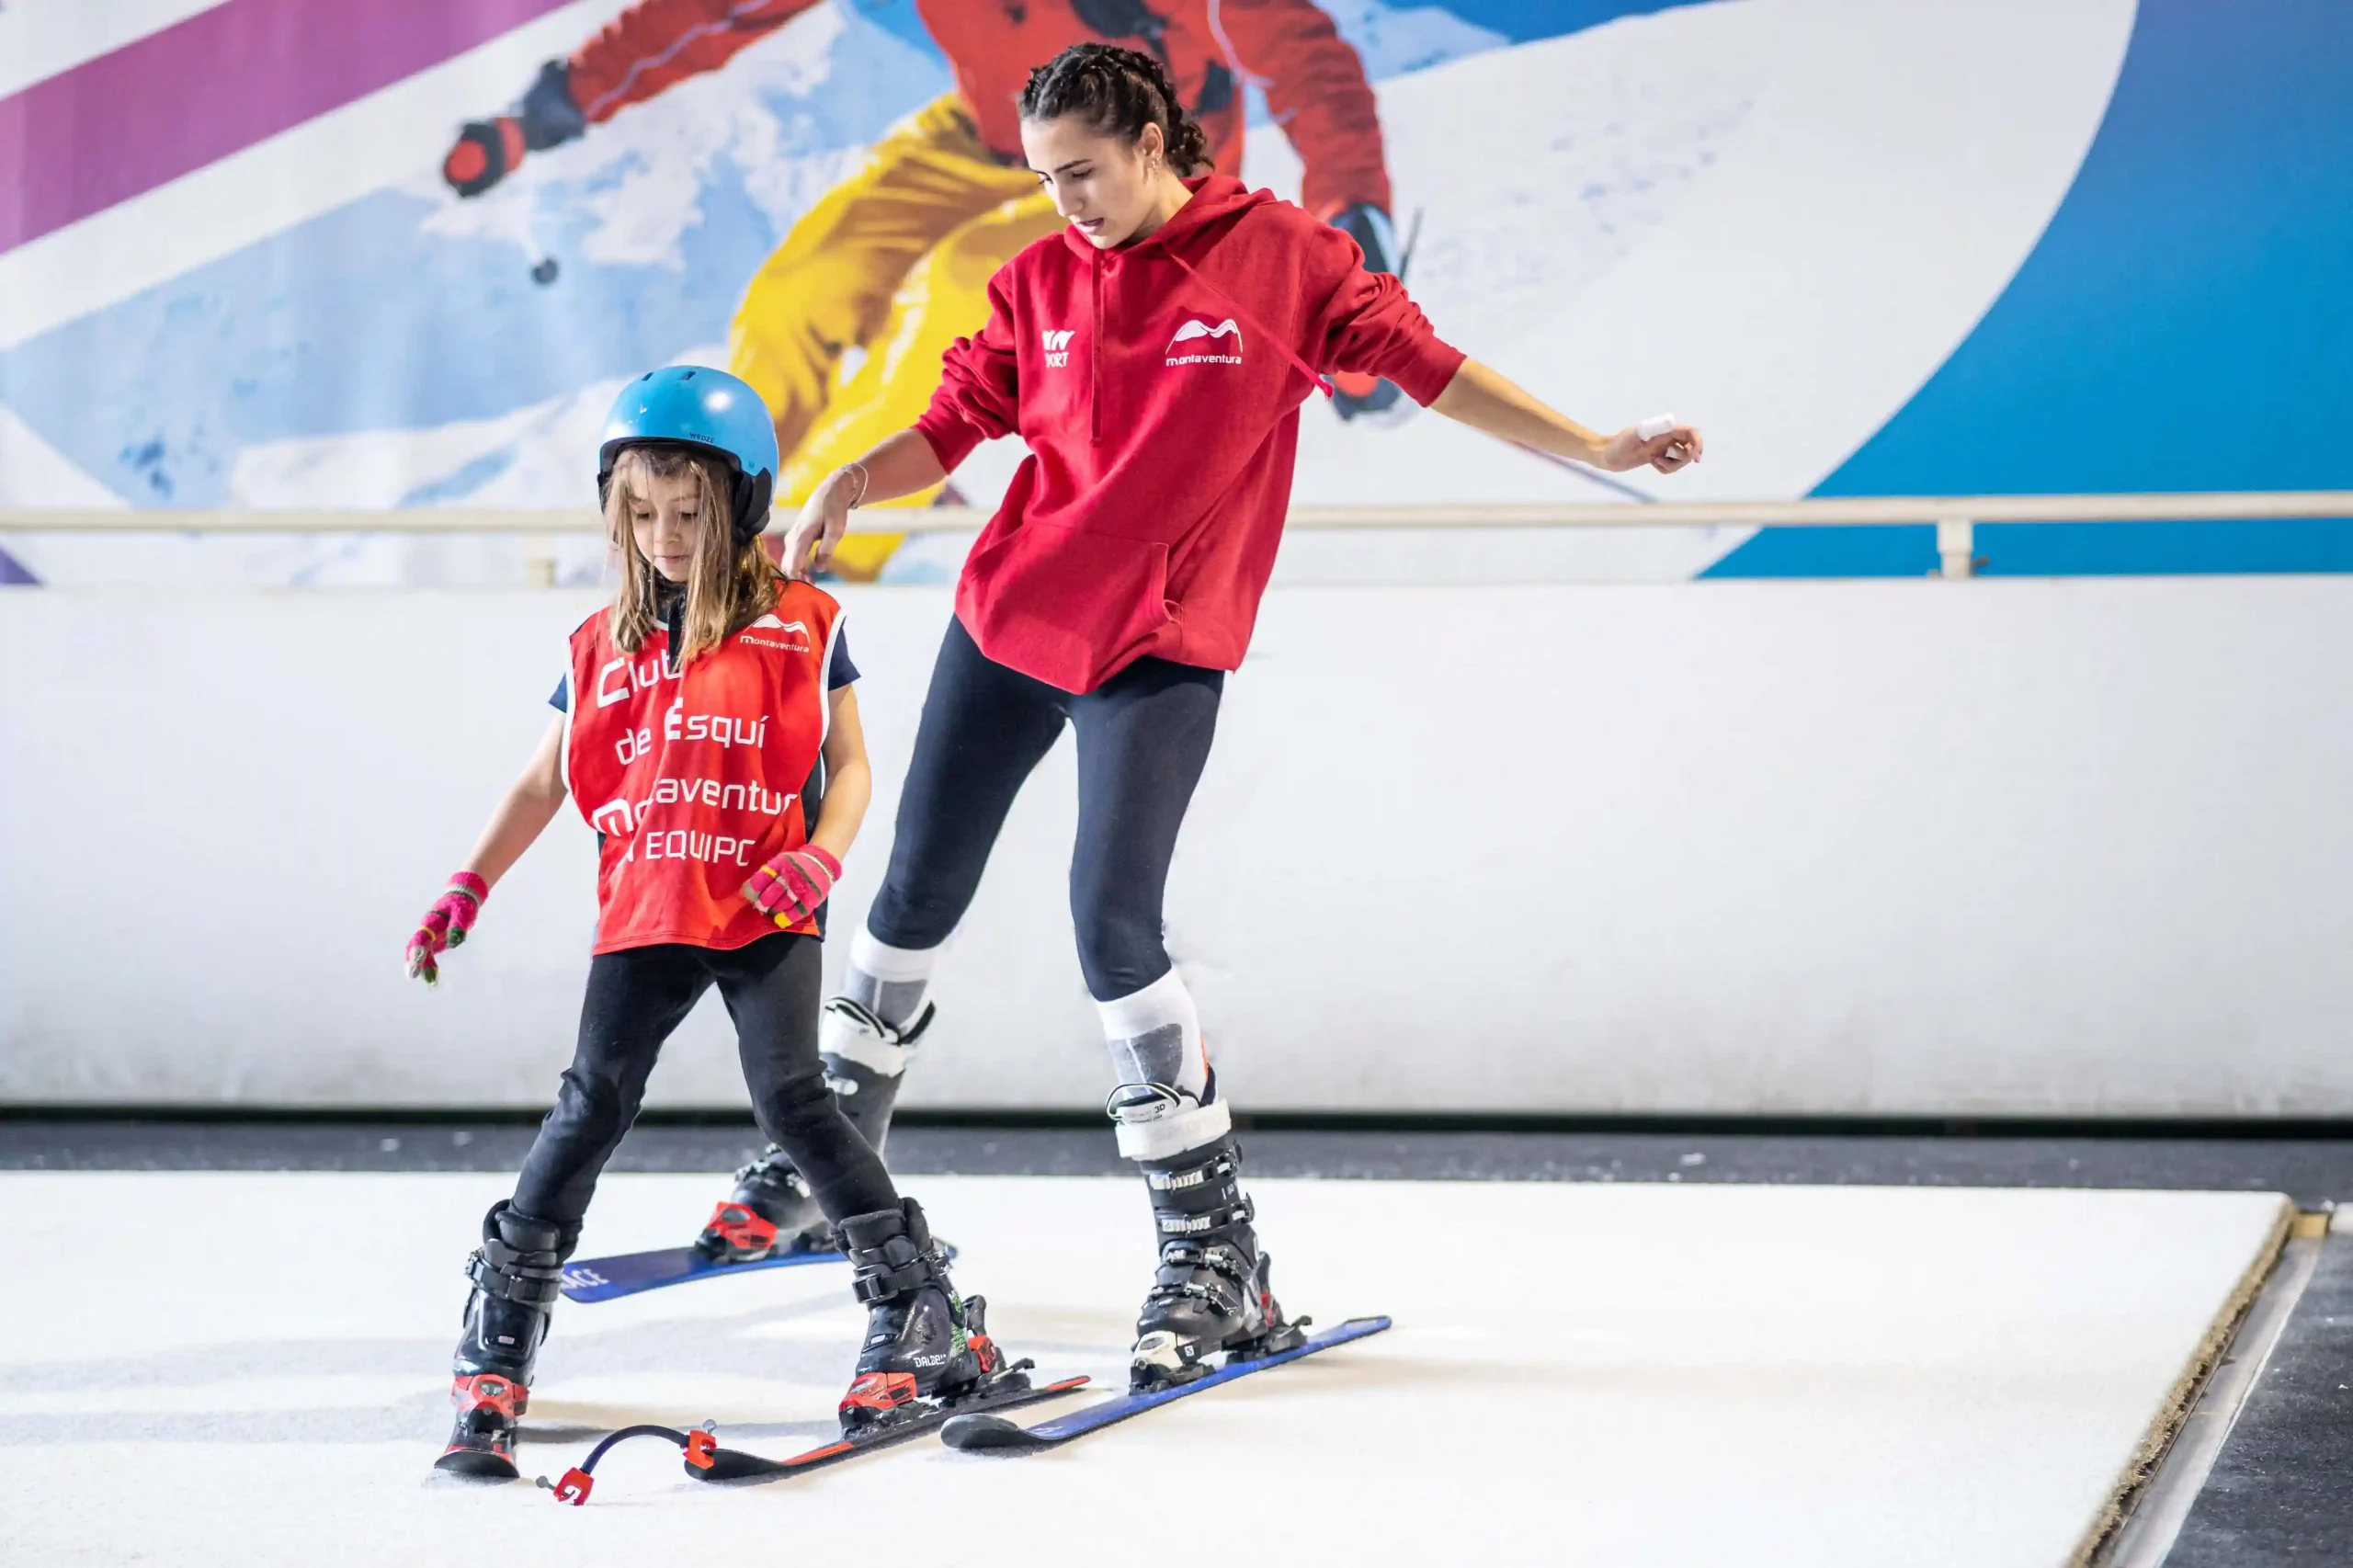 Clases de esquí Indoor para niños en Madrid